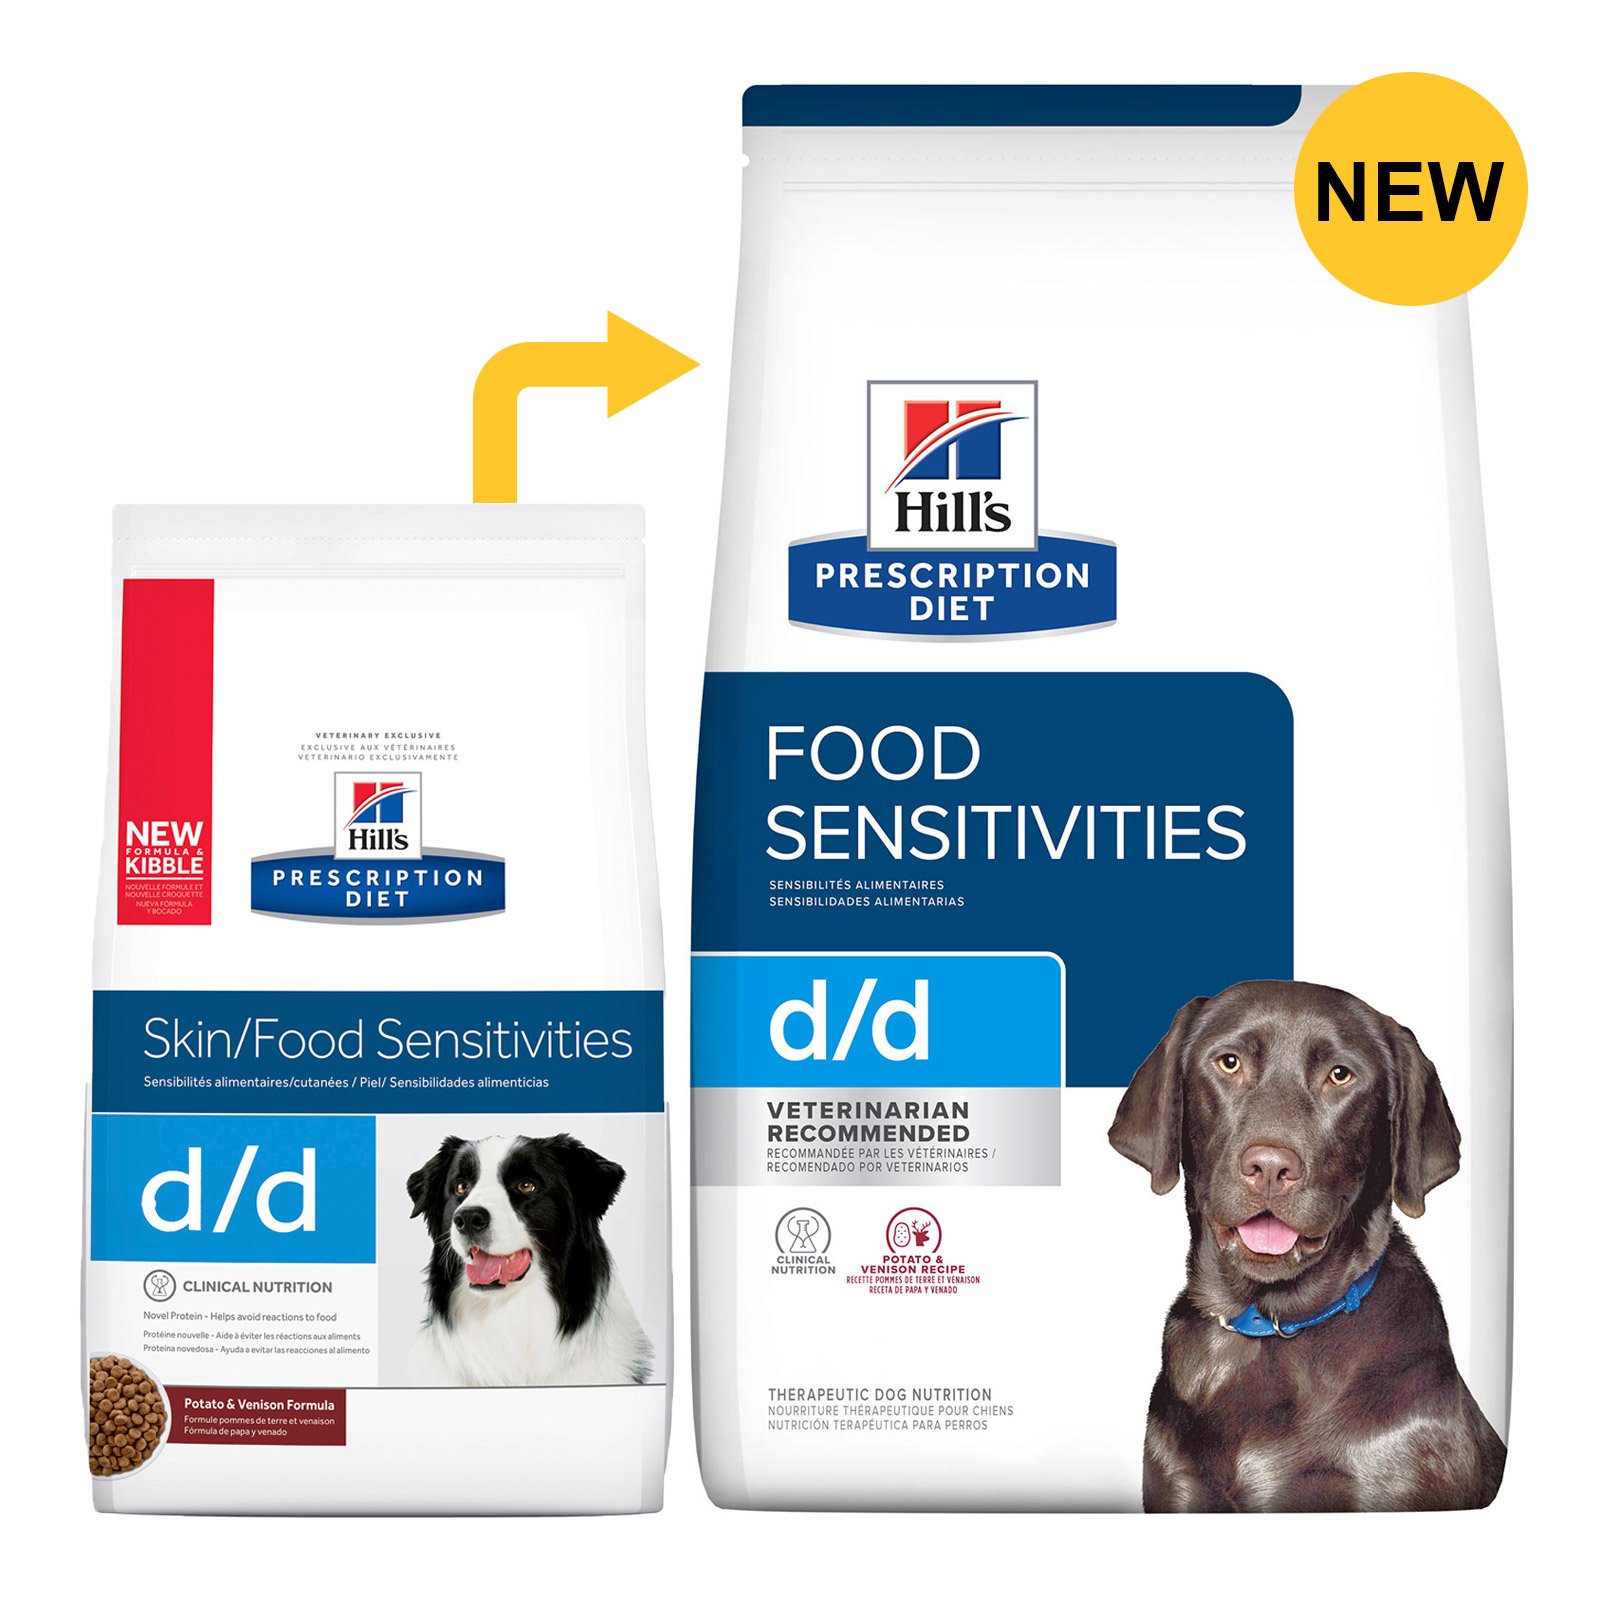 Hill's Prescription Diet d/d Potato & Venison Formula Dry Dog Food 